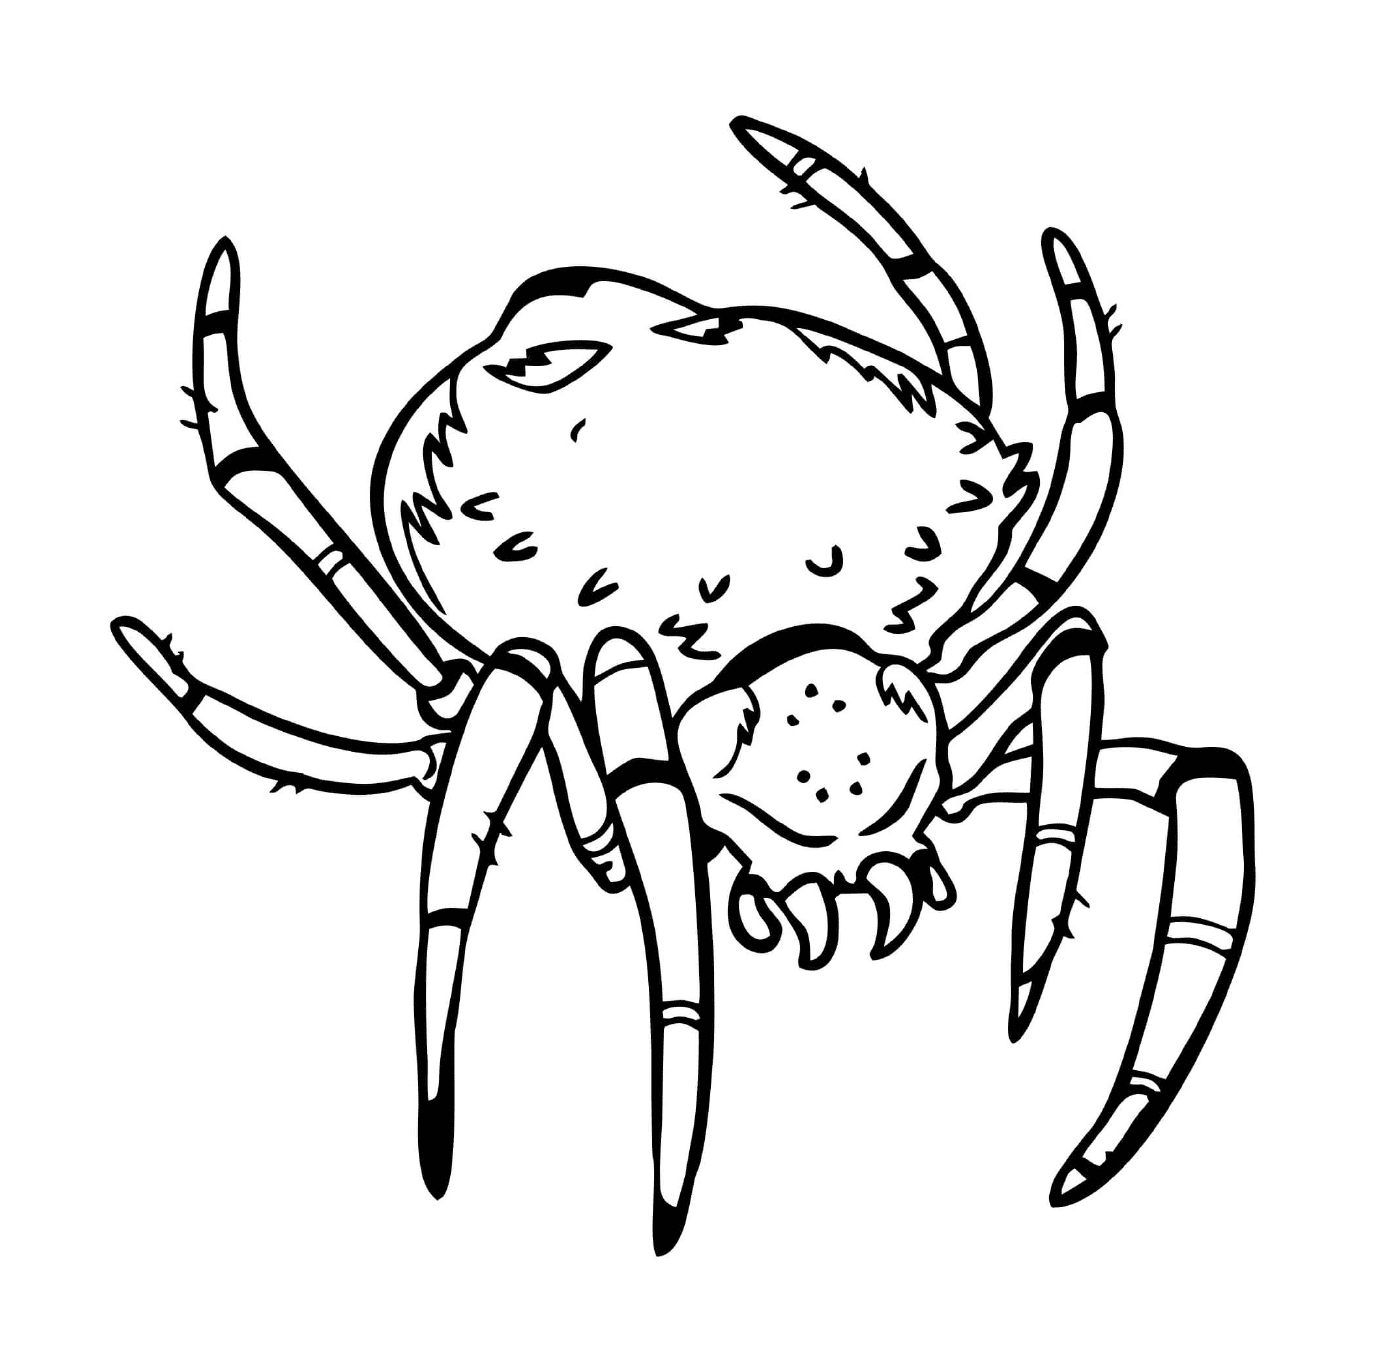   Une araignée effrayante avec un gros corps 